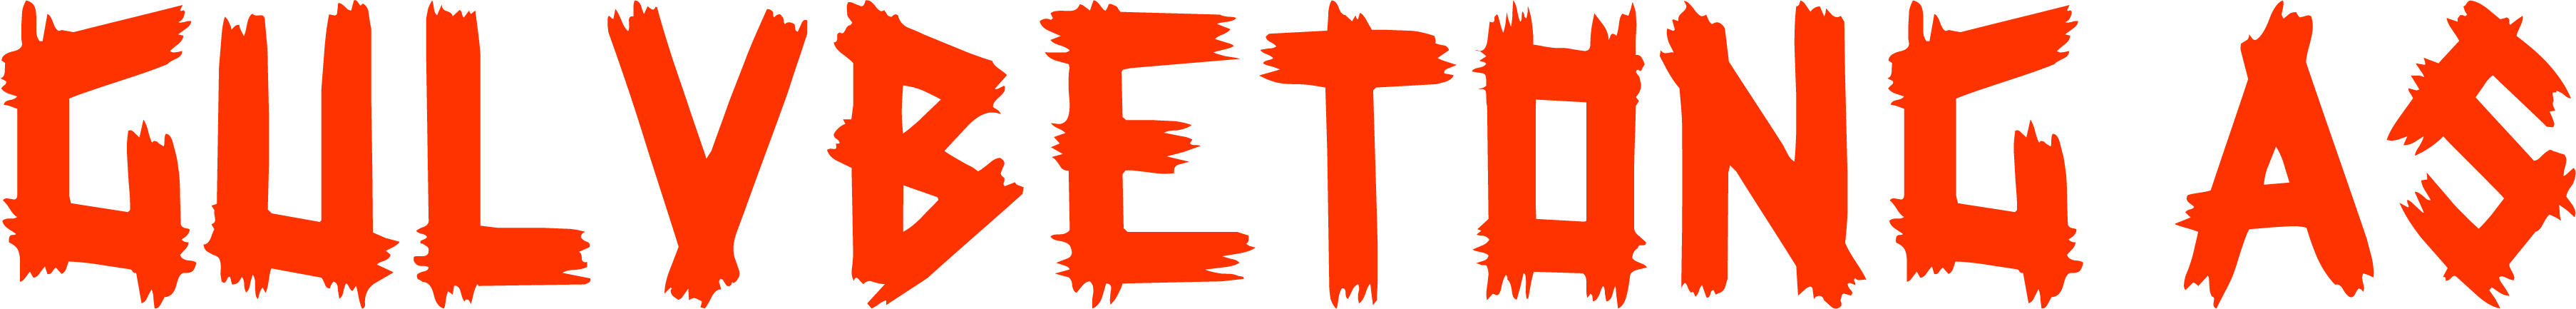 Gulvbetong Logo - Til forsiden